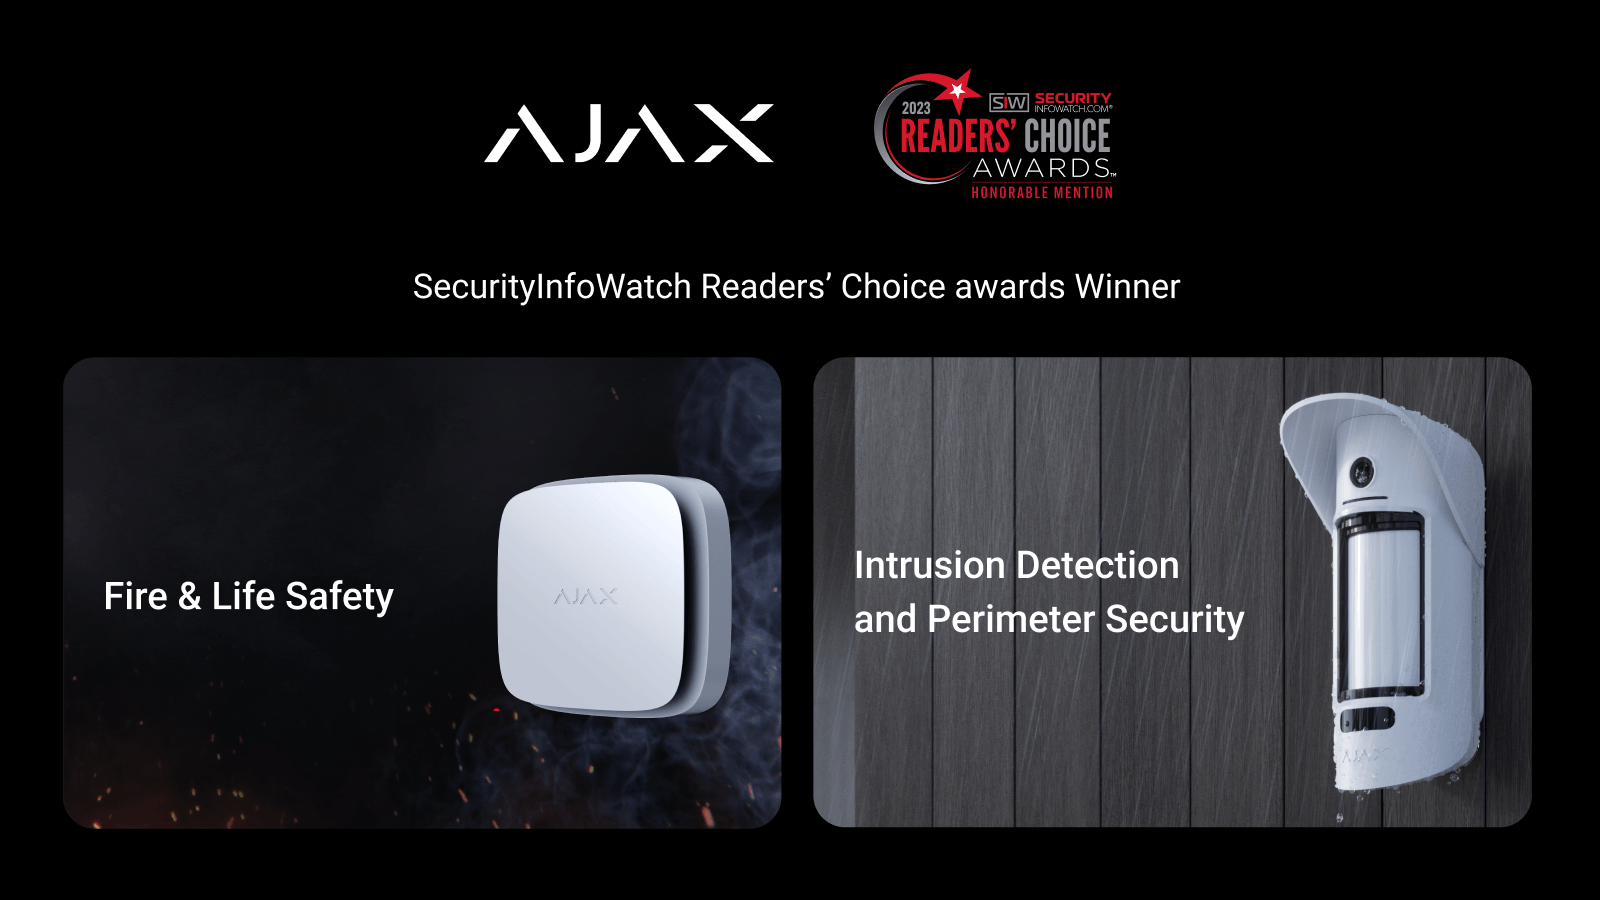 Ajax Systems получила премию американского издания SecurityInfoWatch.com в 2 категориях